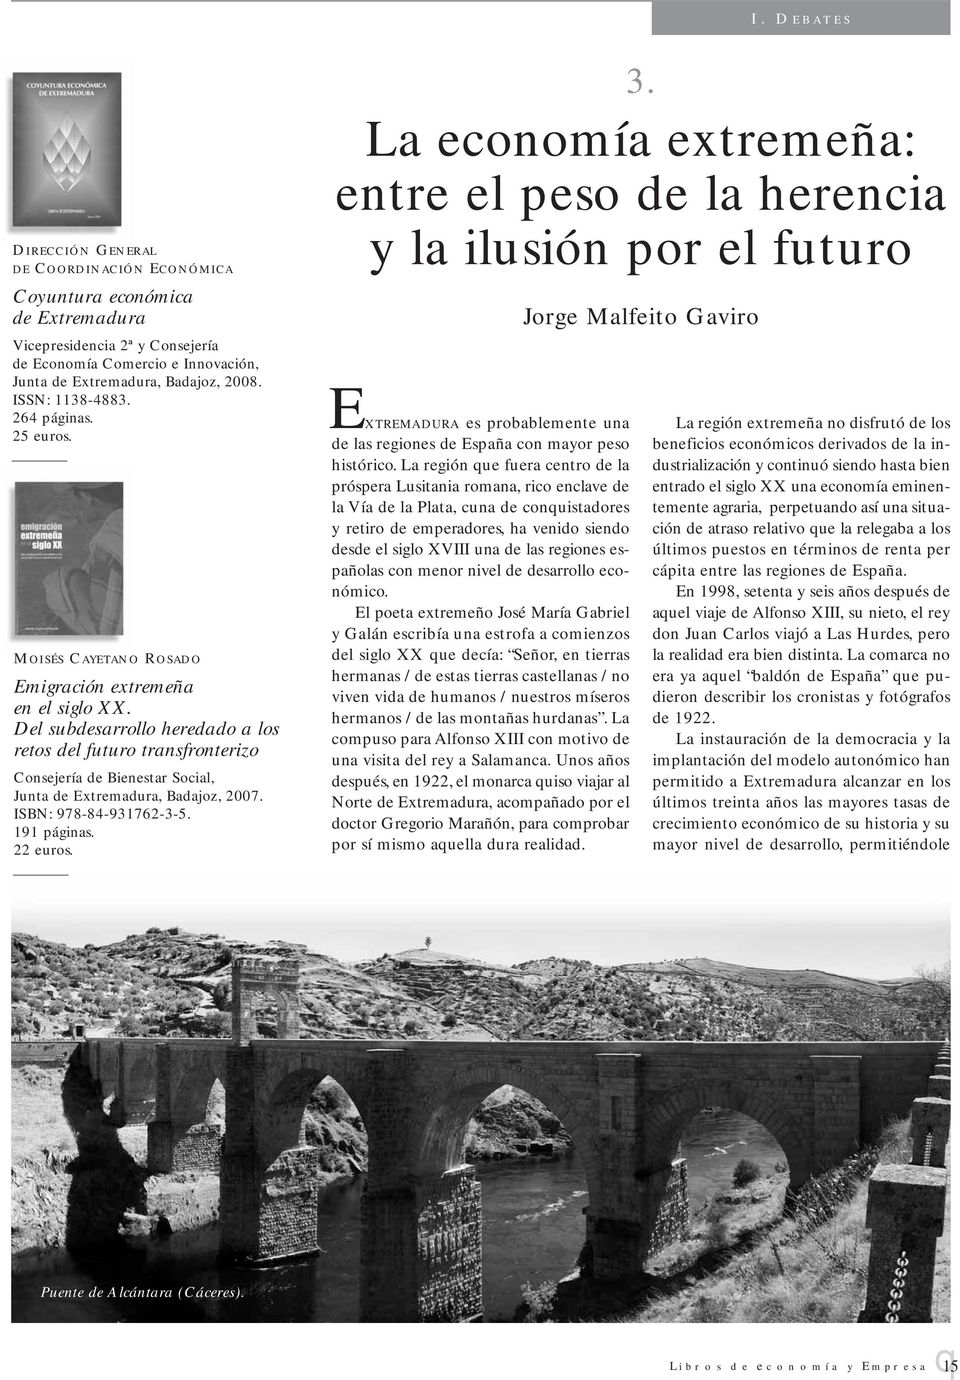 Del subdesarrollo heredado a los retos del futuro transfronterizo Consejería de Bienestar Social, Junta de Extremadura, Badajoz, 2007. ISBN: 978-84-931762-3-5. 191 páginas. 22 euros. 3.